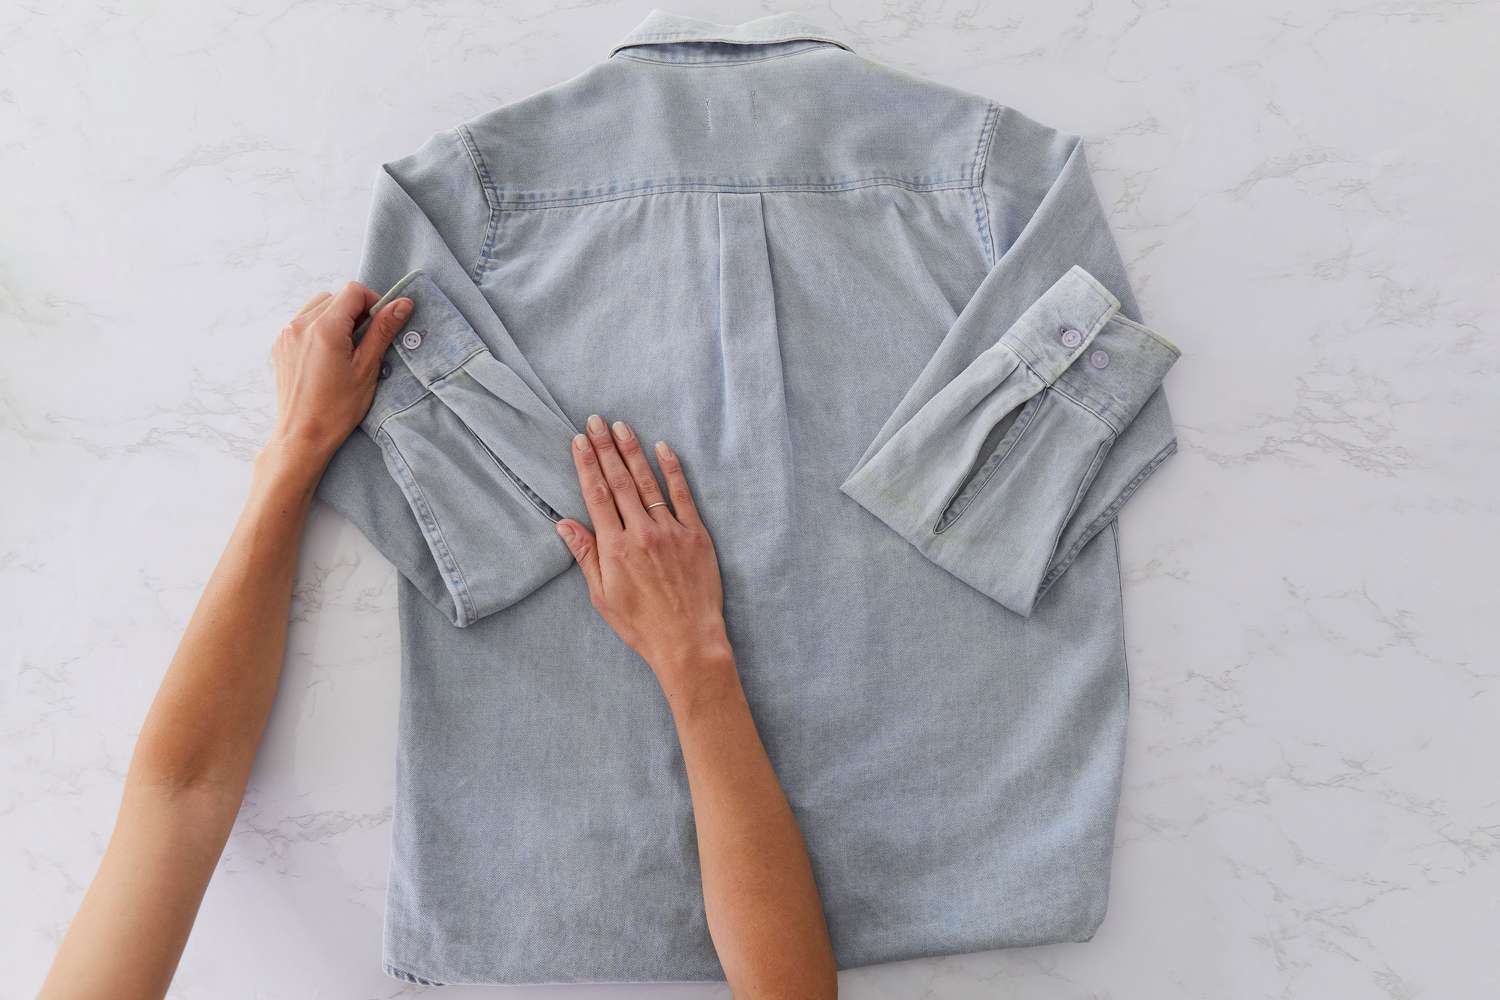 Camisa jeans cinza com botões e mangas dobradas do punho ao ombro